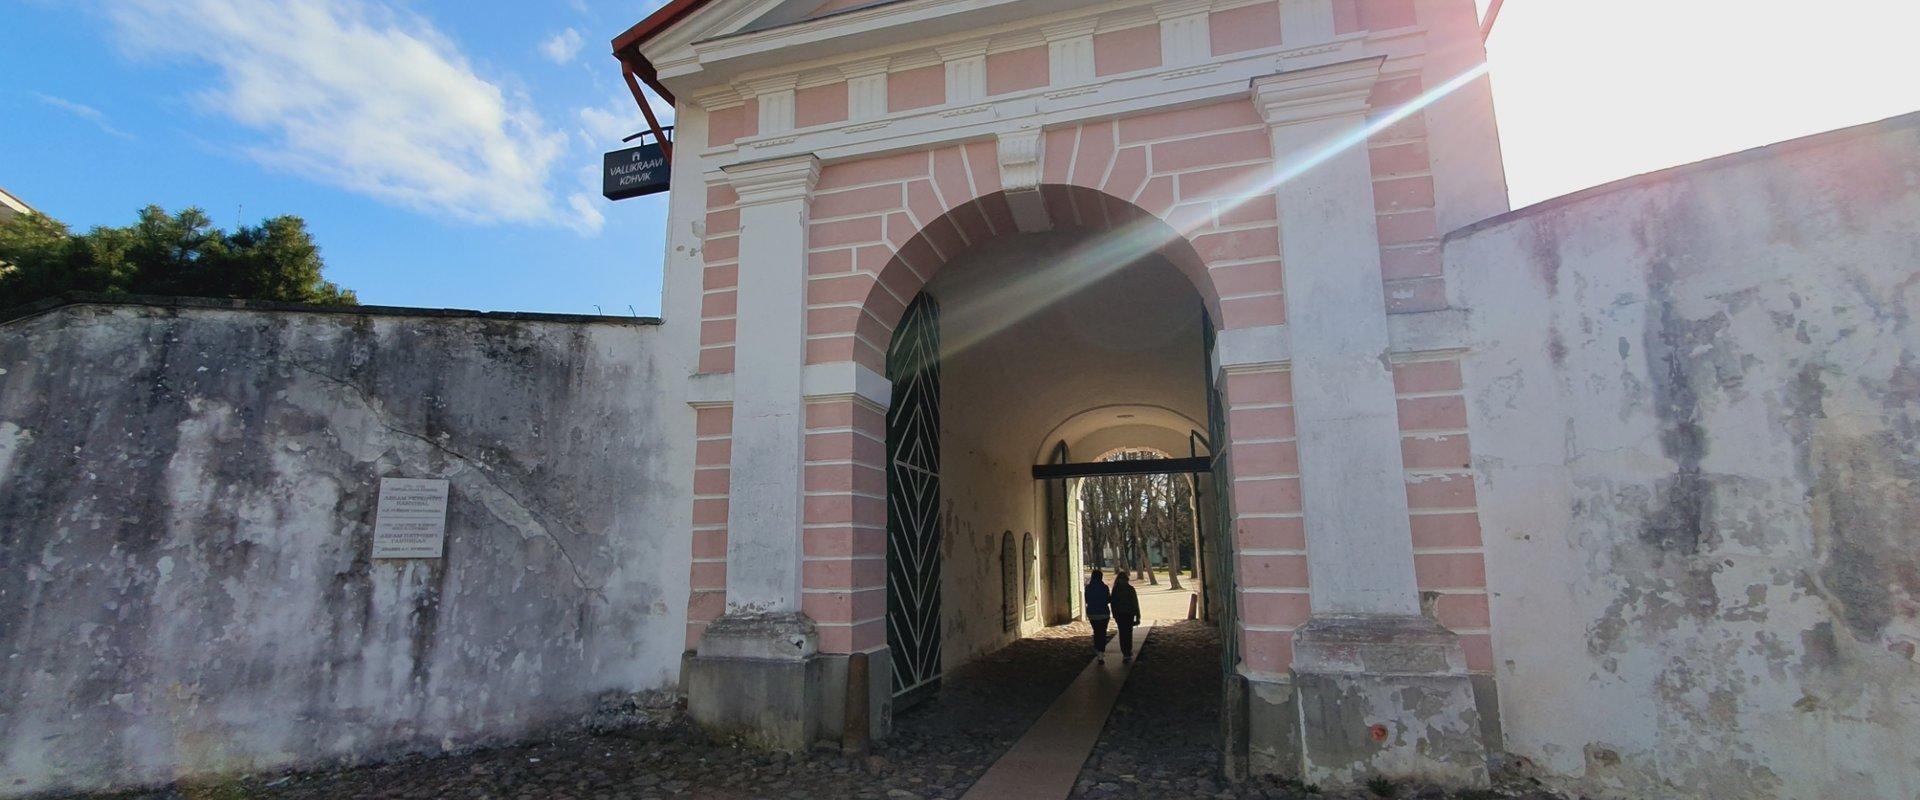 Oppaan johdolla Venäjän keisarikunnan historian poluilla Pärnussa